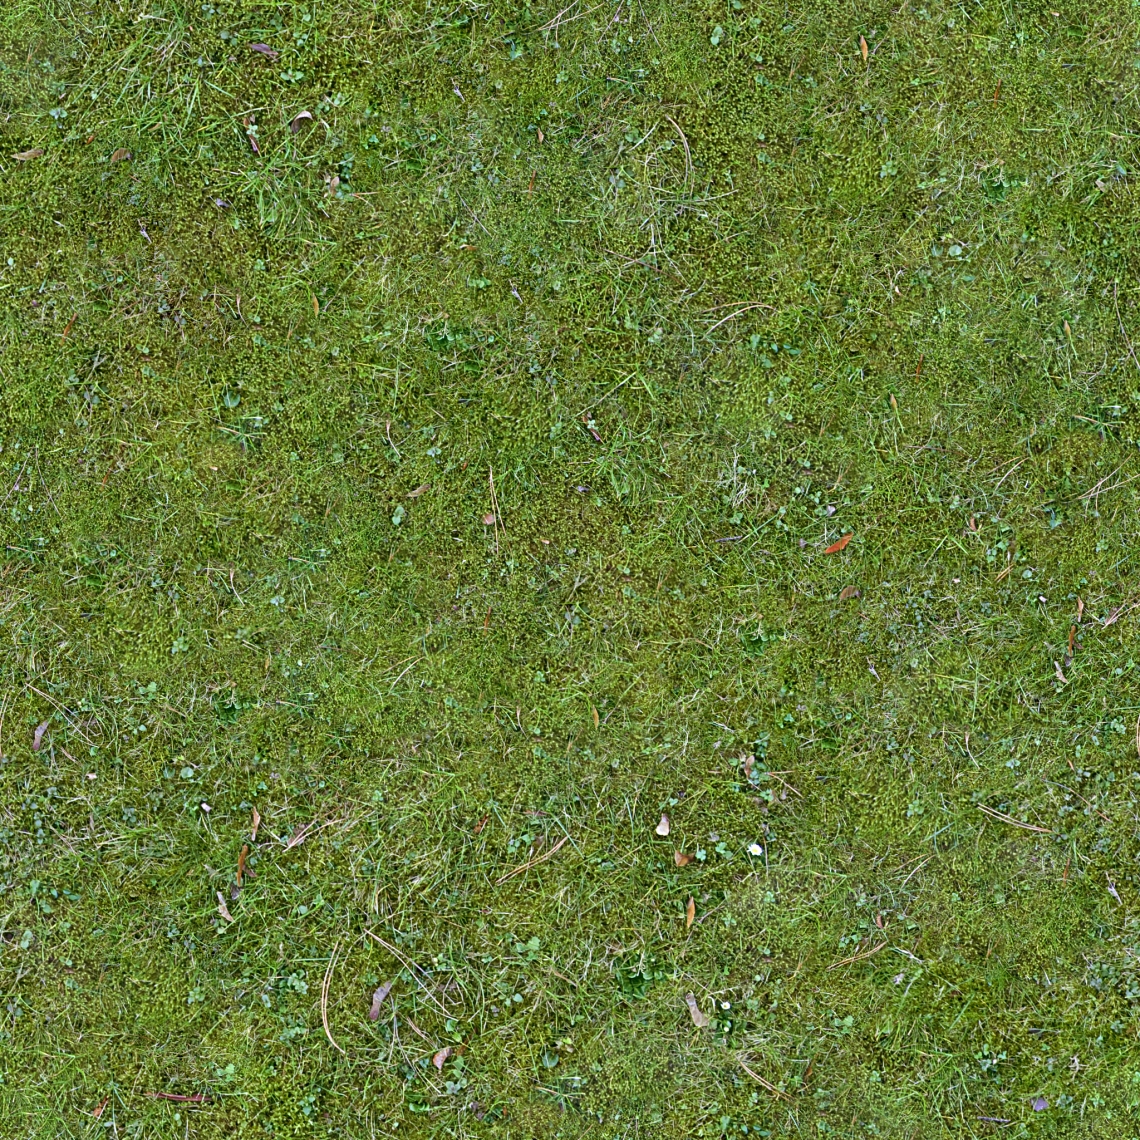 Lush Seamless Grass Texture Grass Texture Seamless Grass Textures Images